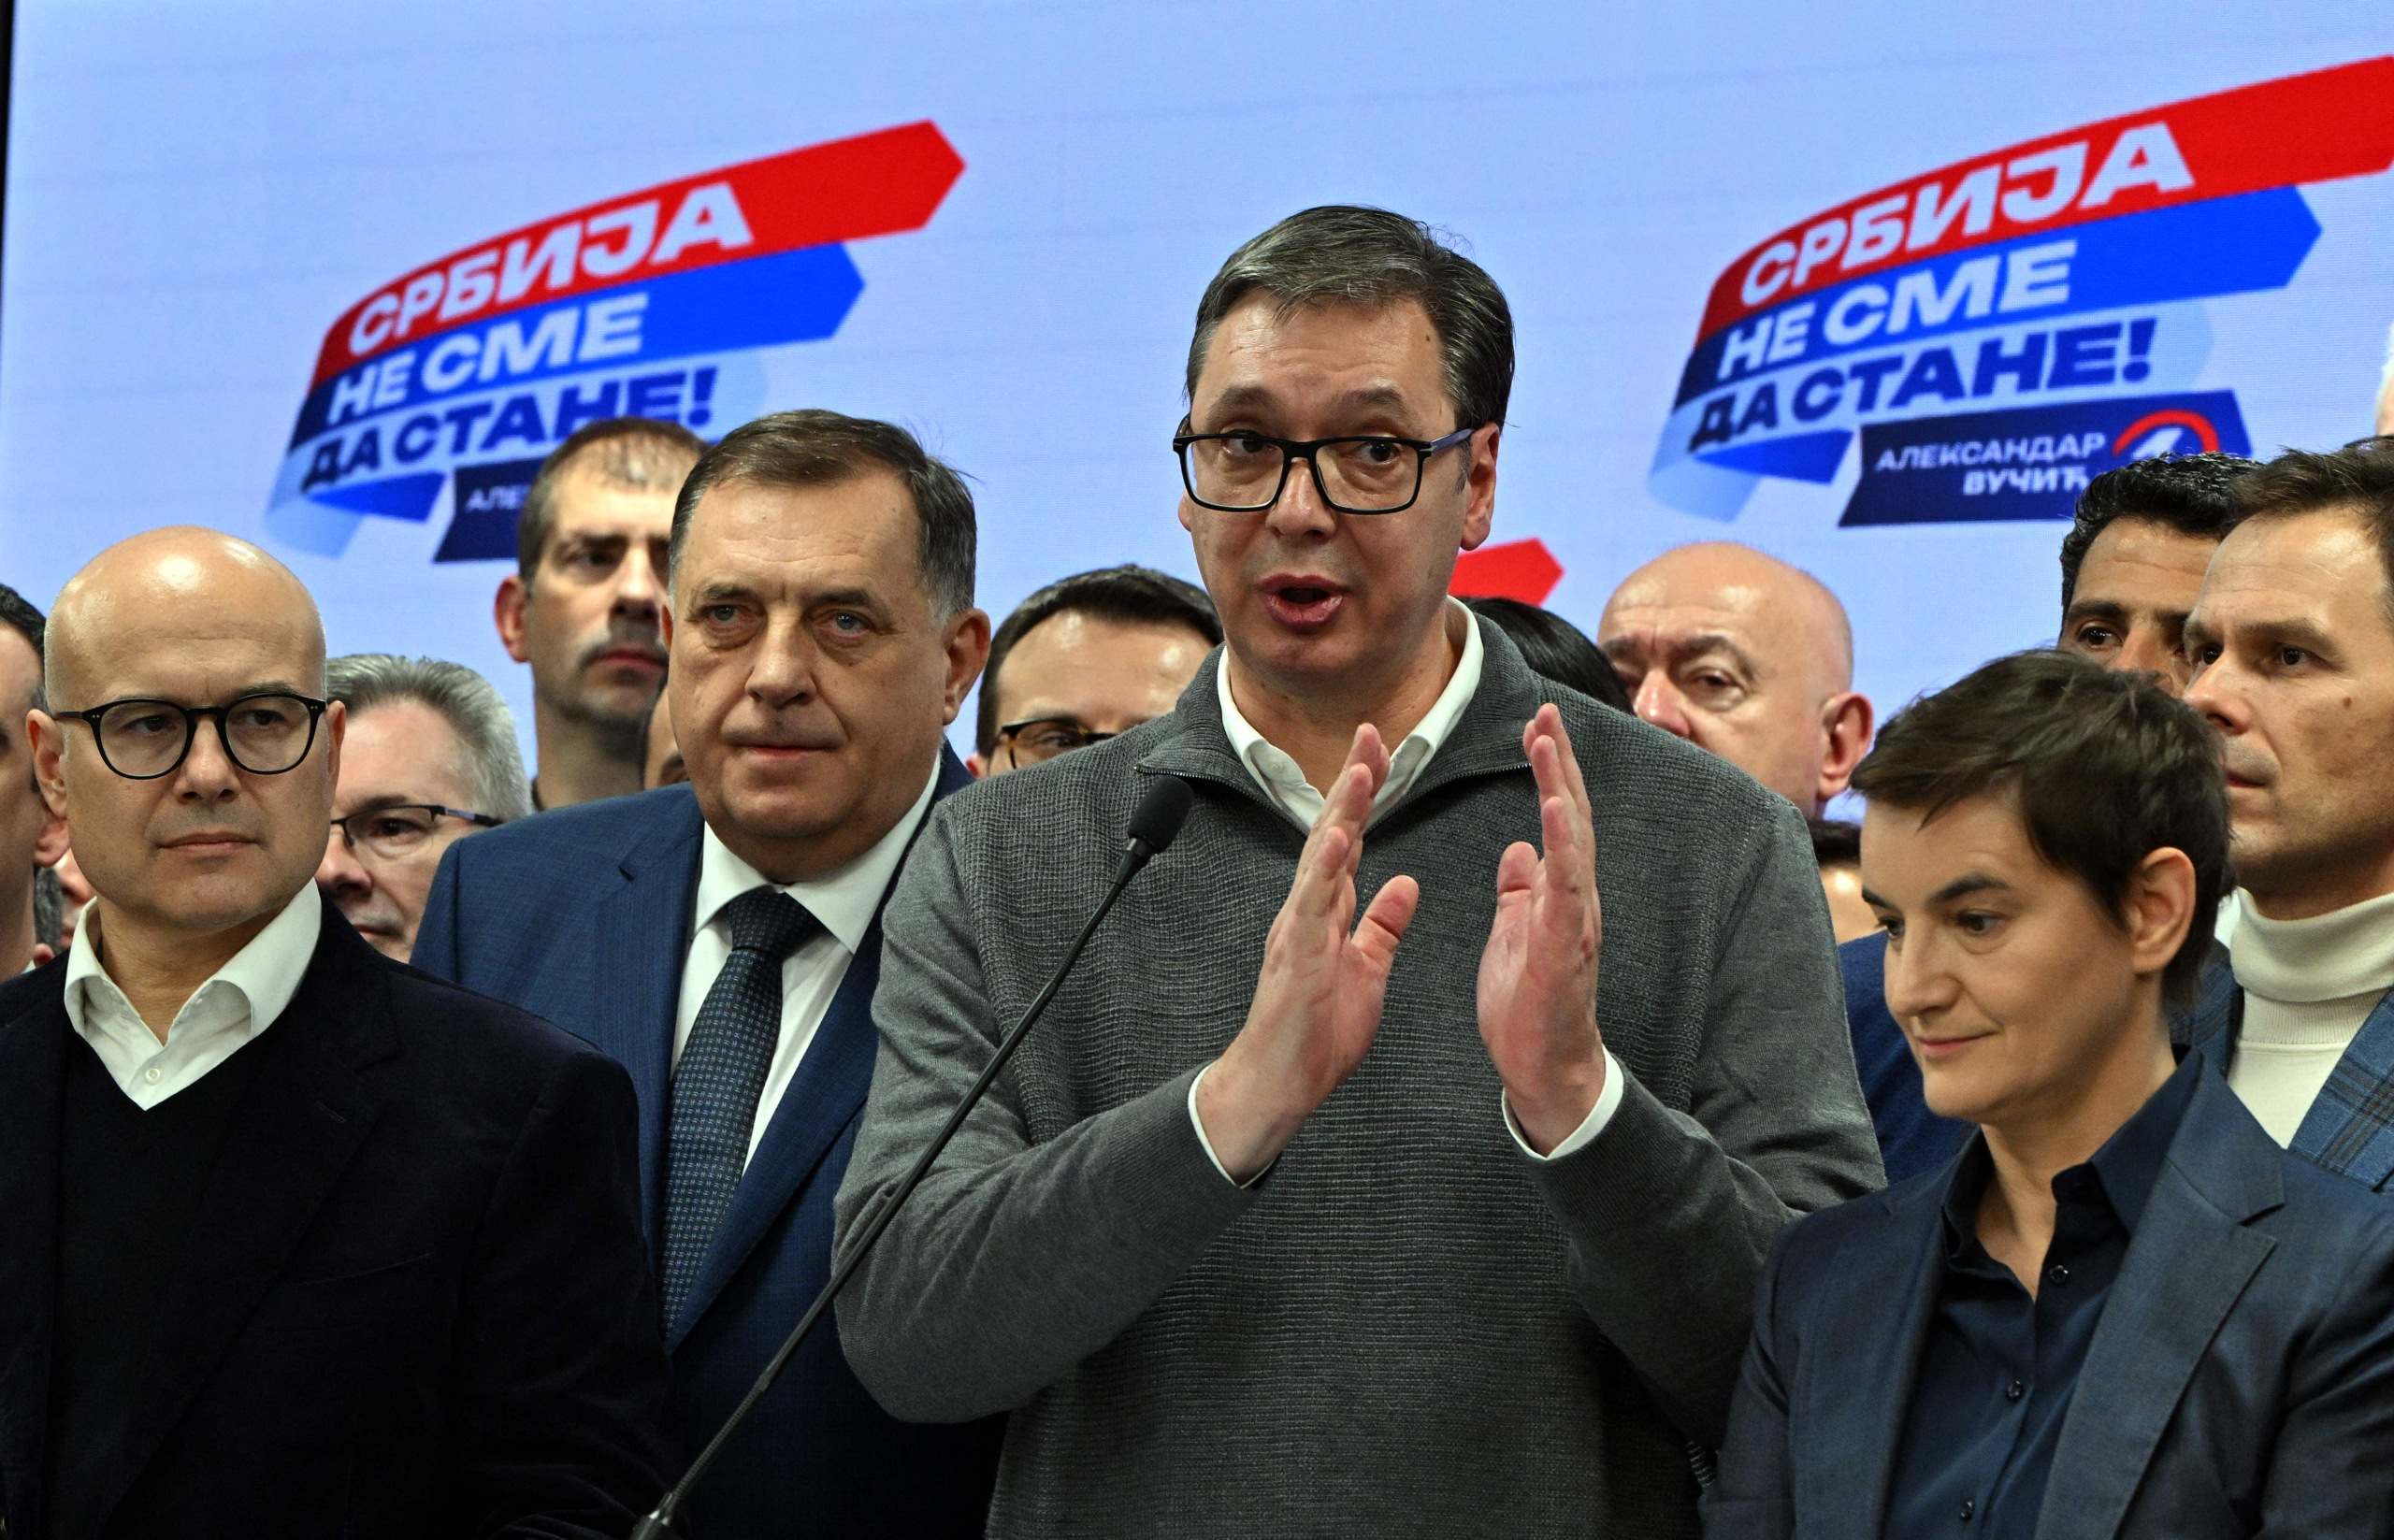 serbian presidentti vucic ennakoi oikeistopopulistisen sns-puolueensa voittaneen parlamenttivaalit, ääntenlaskenta edelleen käynnissä